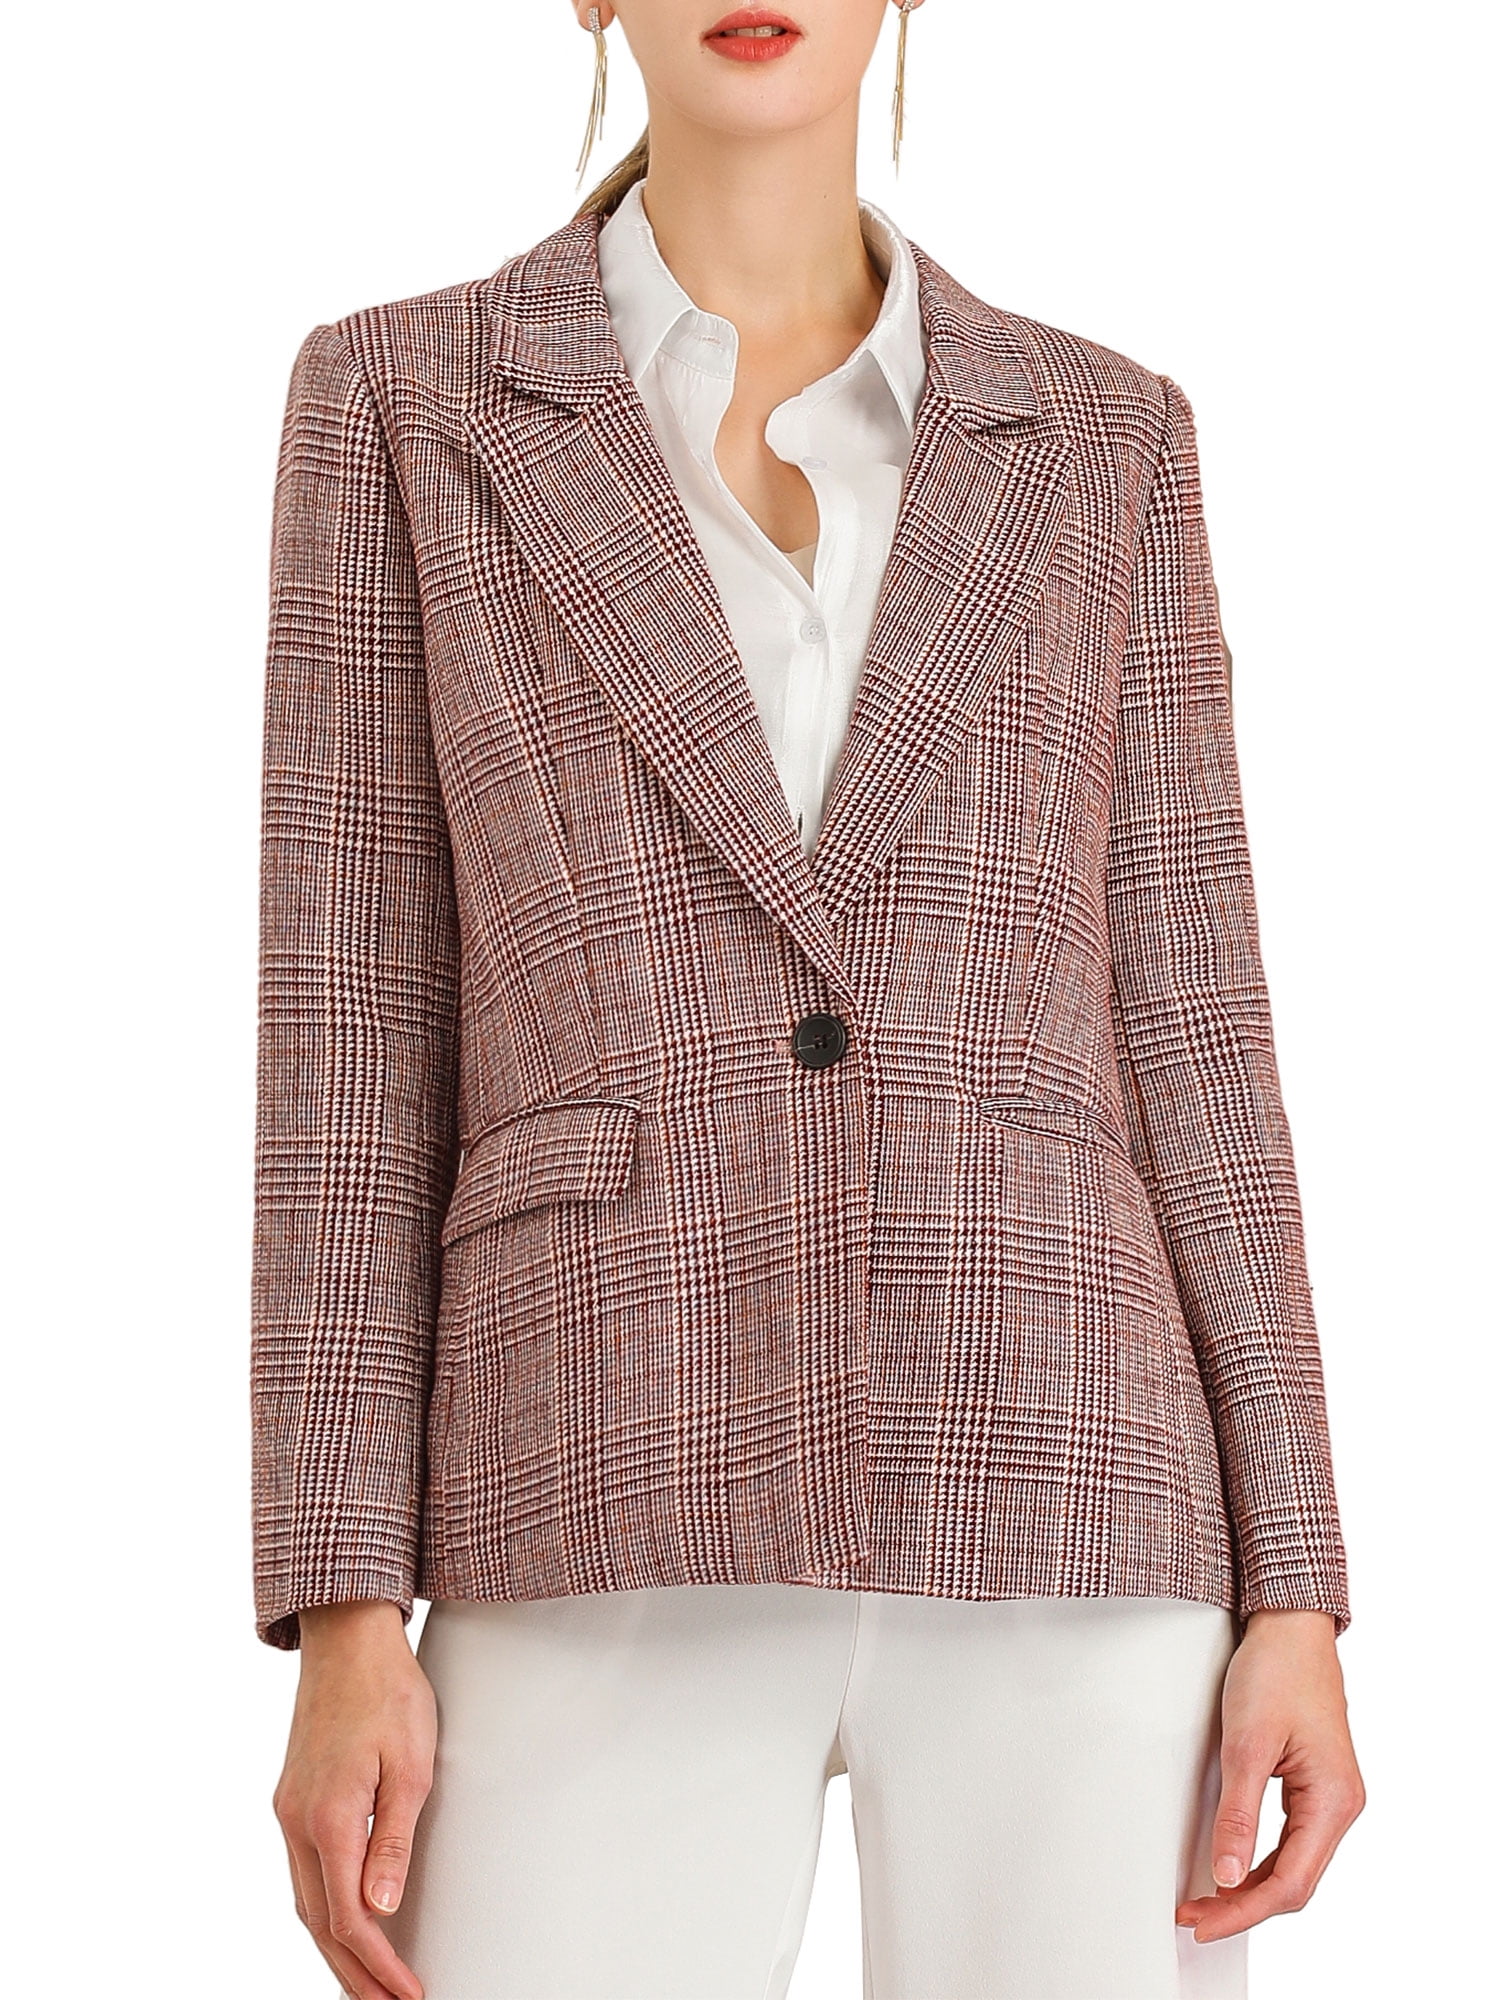 Unique Bargains Women's Plaid Notched Lapel One Button Blazer Jacket